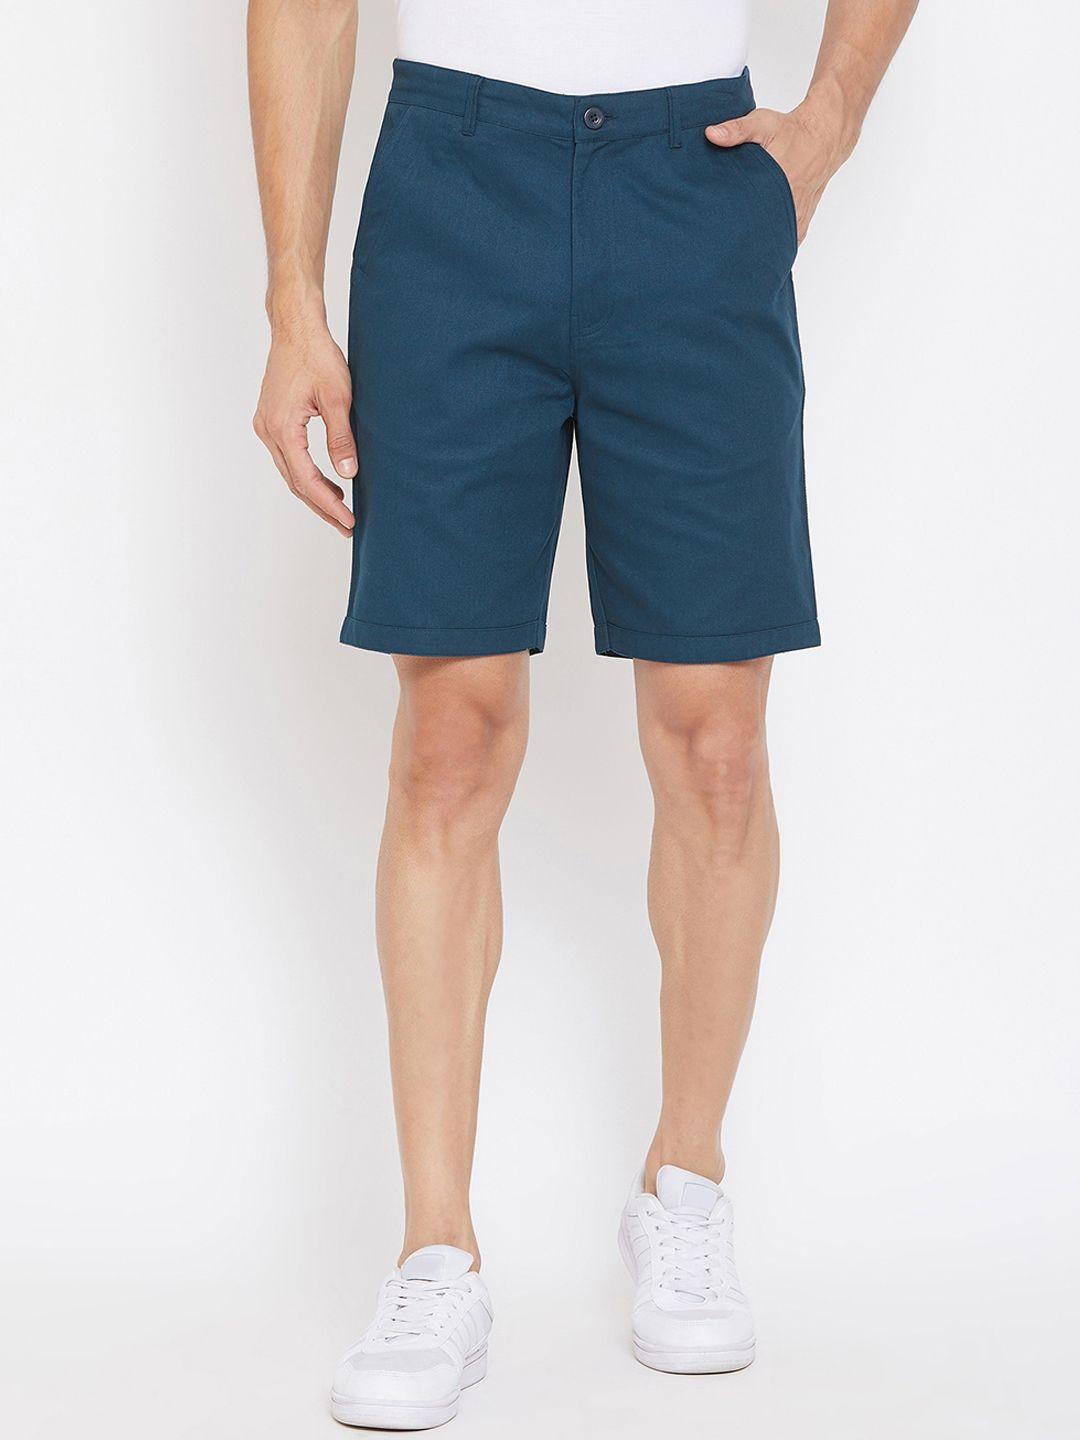 hypernation men teal blue solid regular fit sports shorts